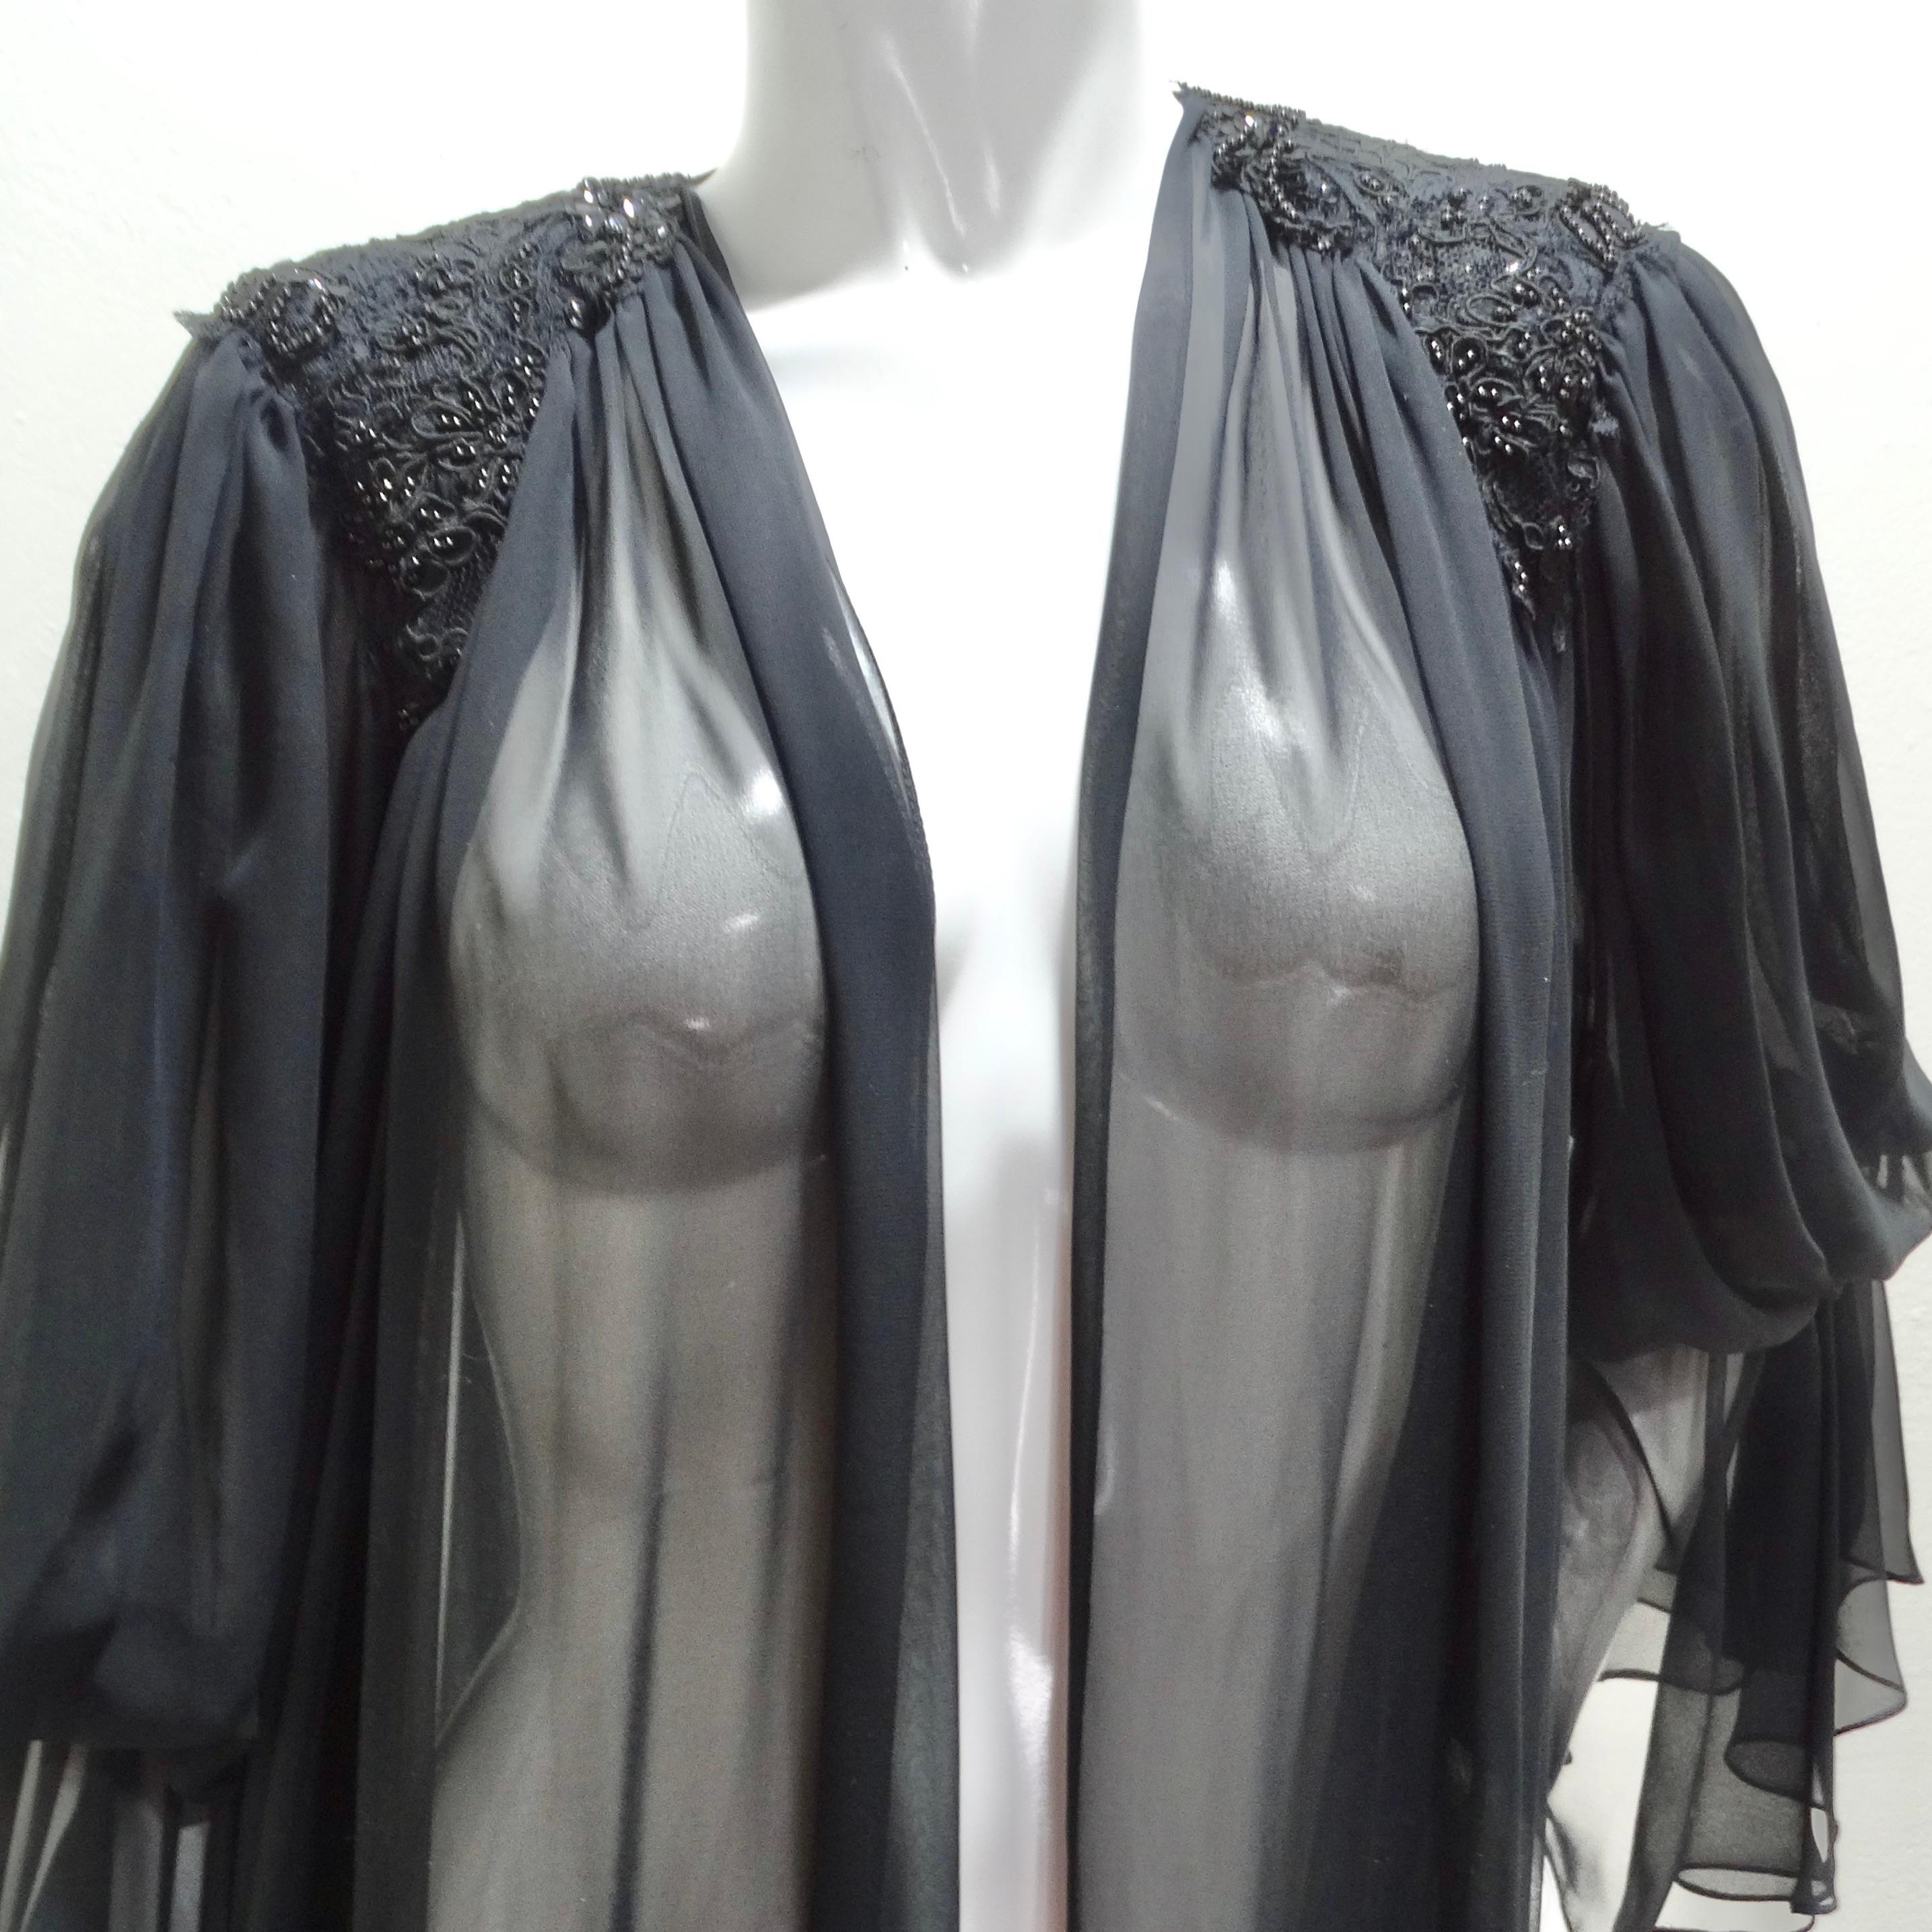 Wir stellen Ihnen die schwarze Robe aus den 1980er Jahren vor - ein wunderschönes und auffälliges Stück, das Vintage-Charme und Luxus ausstrahlt. Diese Robe ist aus einem schwarzen, seidigen, durchsichtigen Stoff gefertigt, mit atemberaubenden,